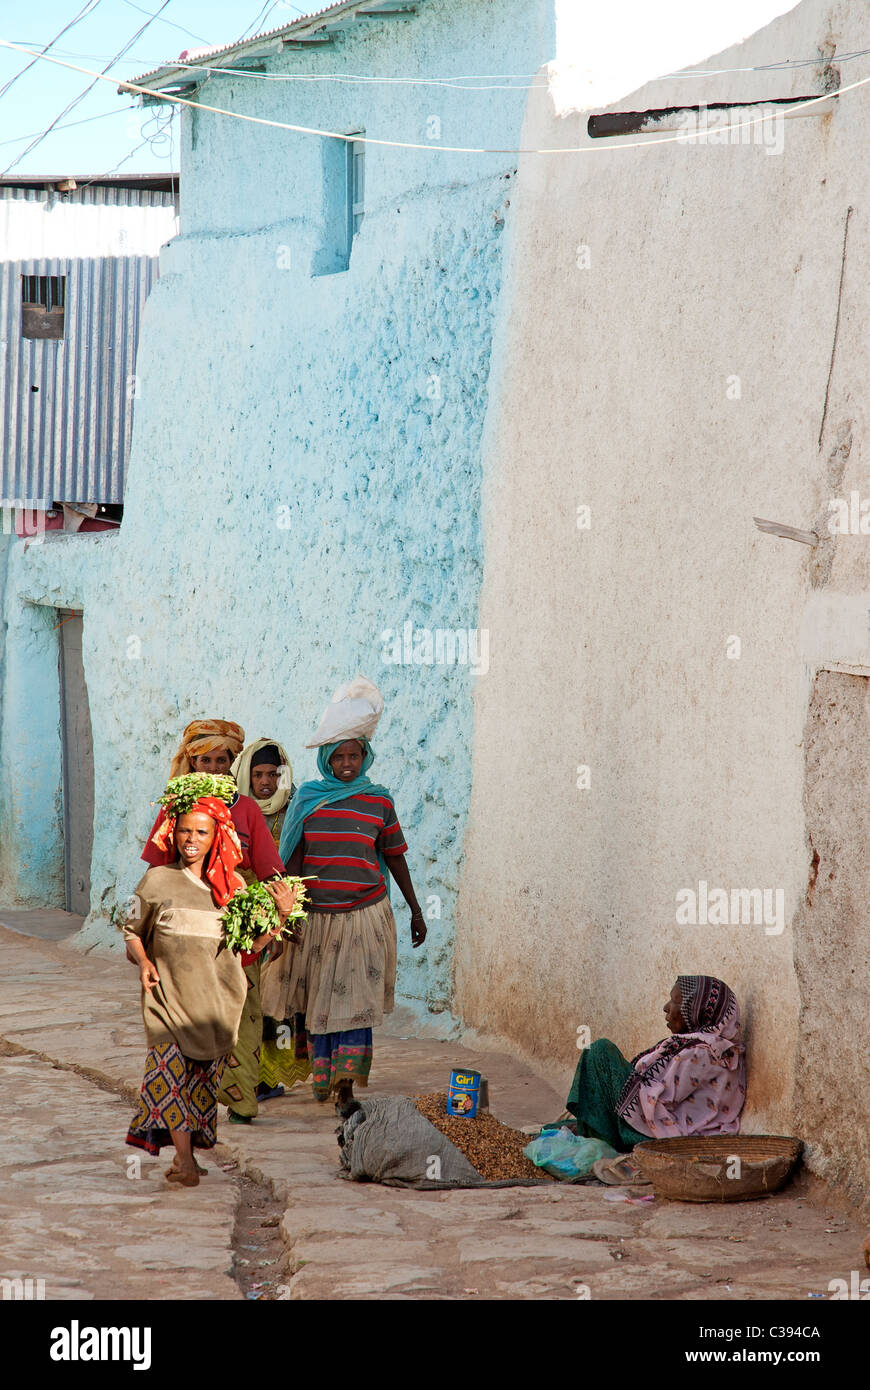 Escena callejera en Harar, Etiopía Foto de stock